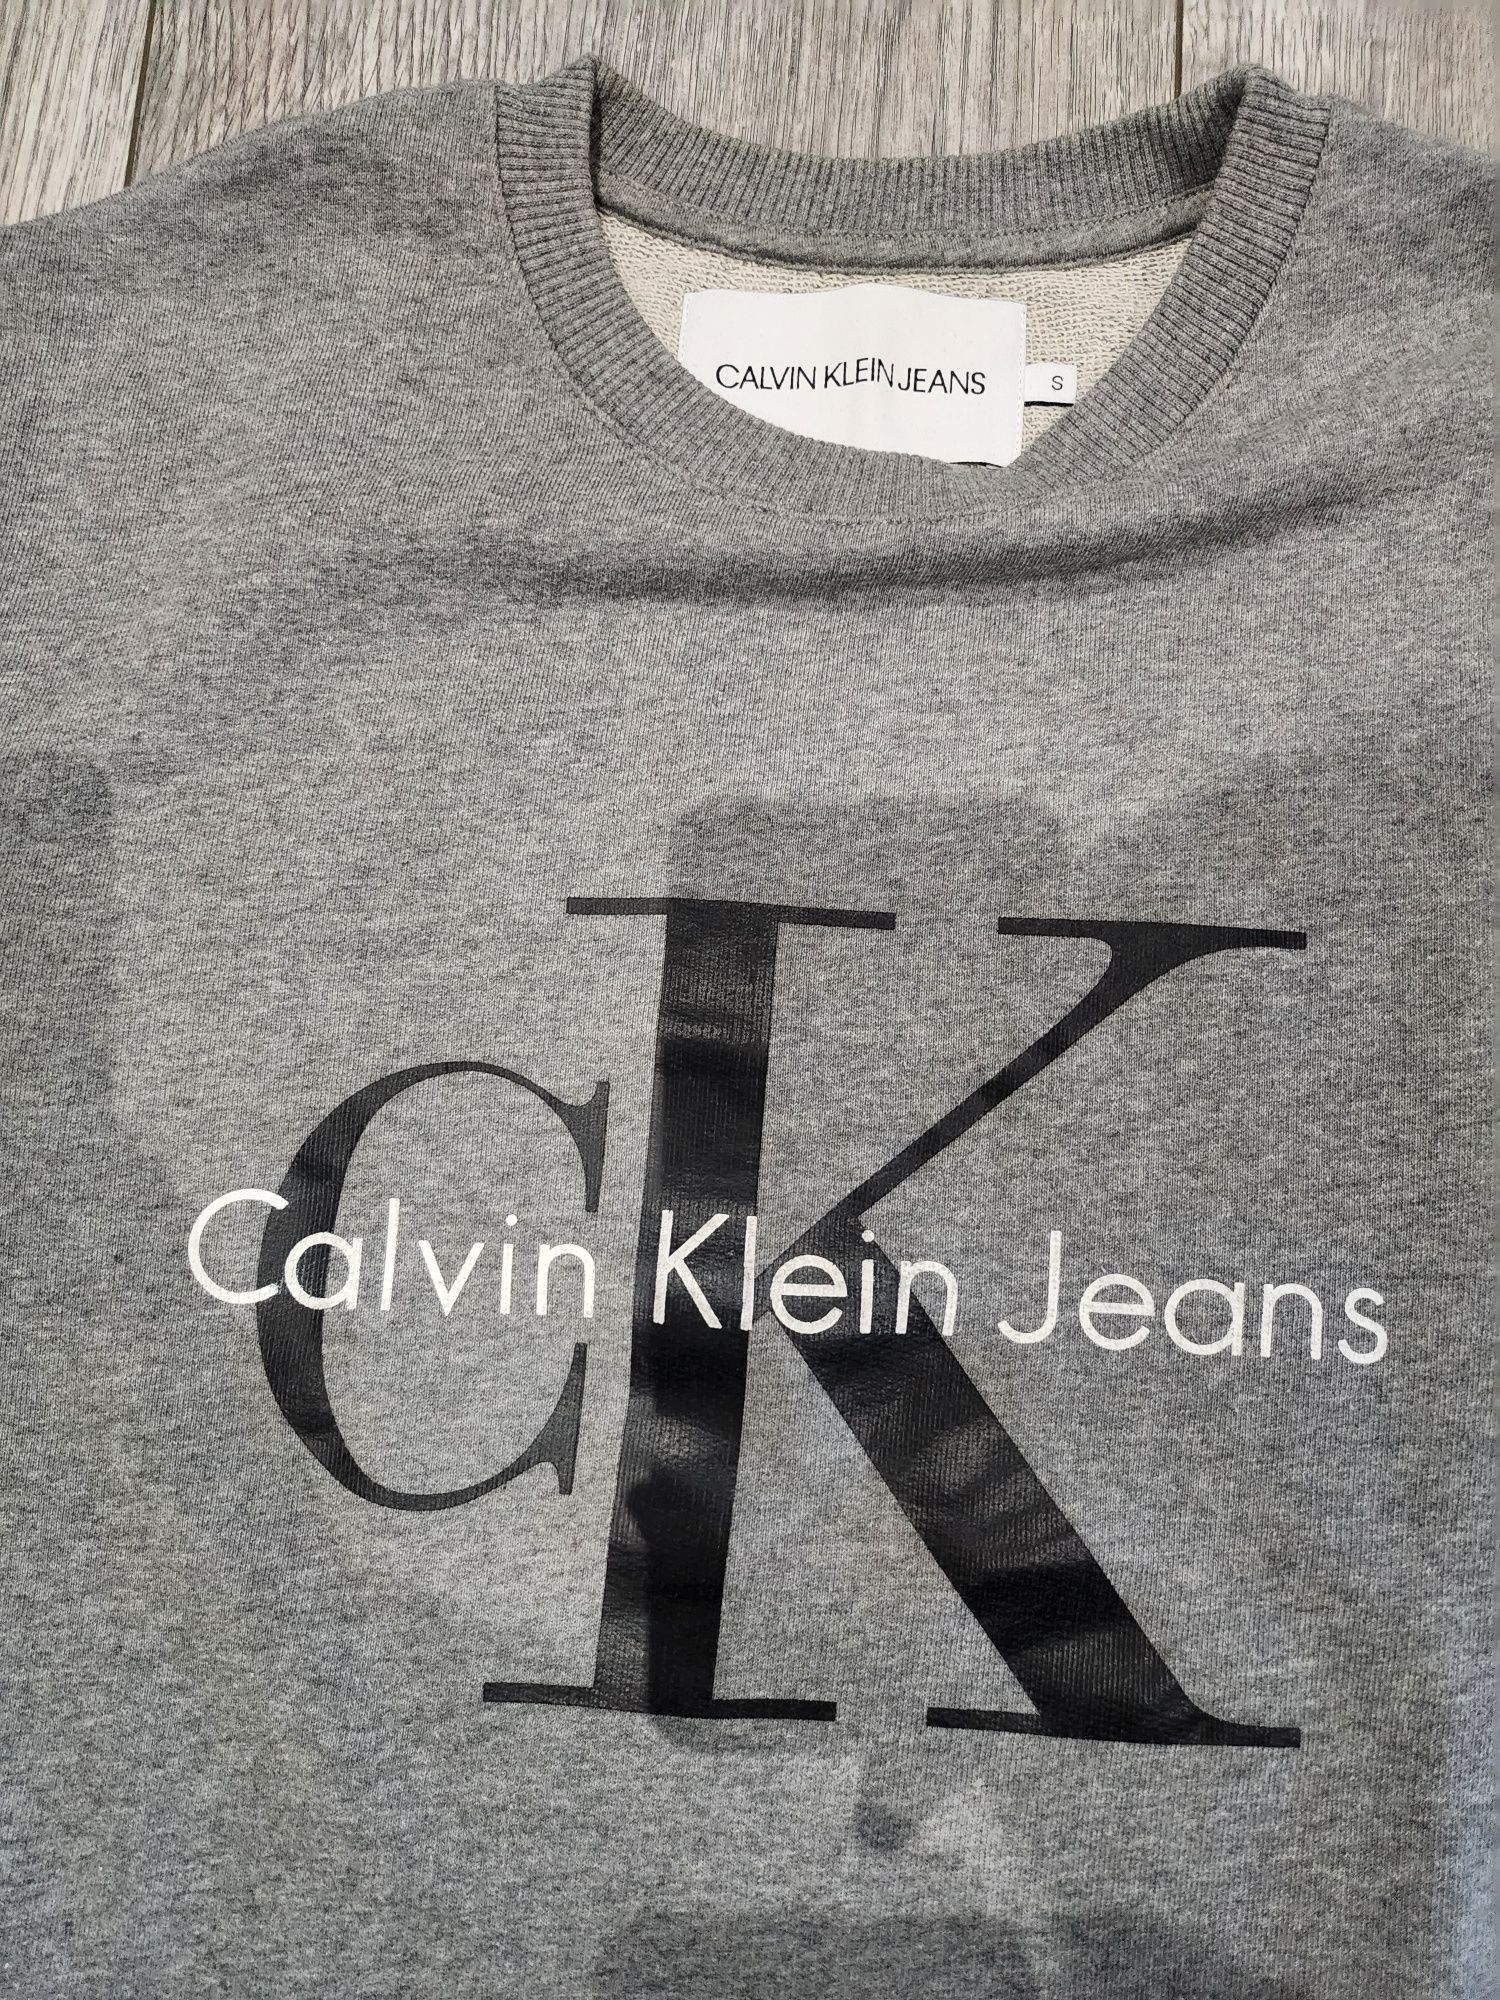 Bluza męska Calvin Klein